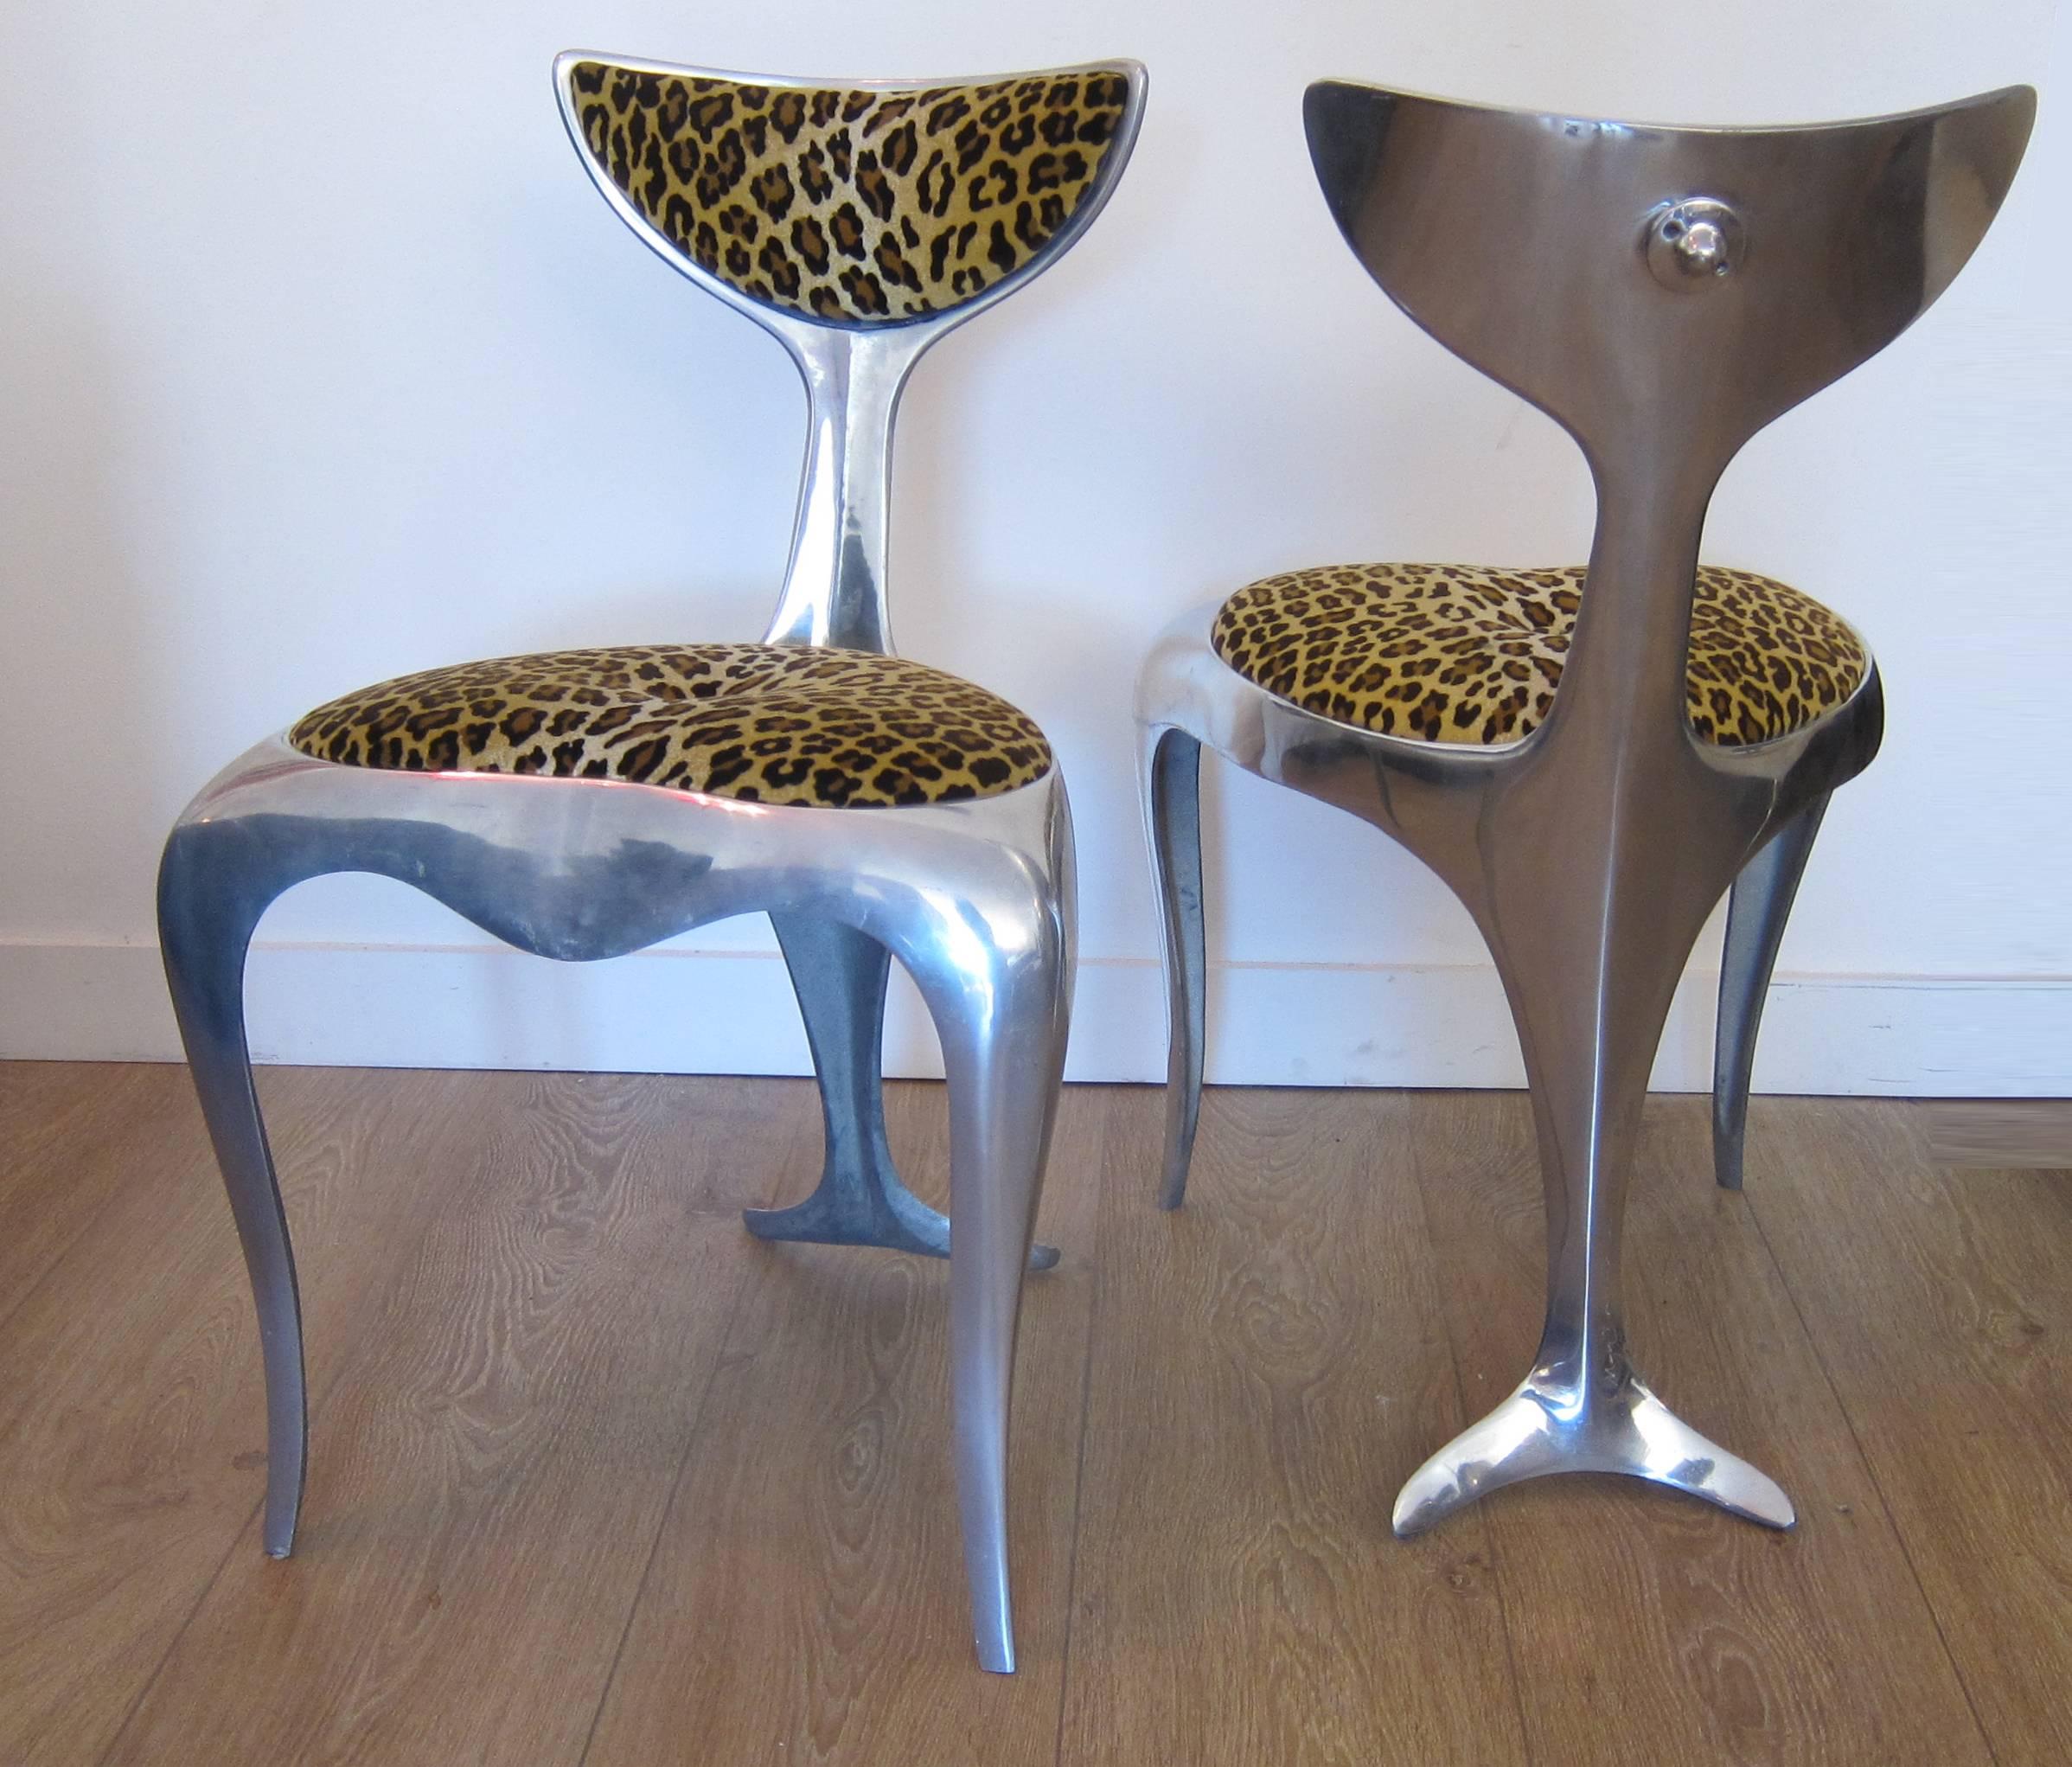 Paire de chaises à queue de dauphin en aluminium poli par Mark Brazier-Jones. 
Signé et numéroté 41/300 et 44/300:: 1994.